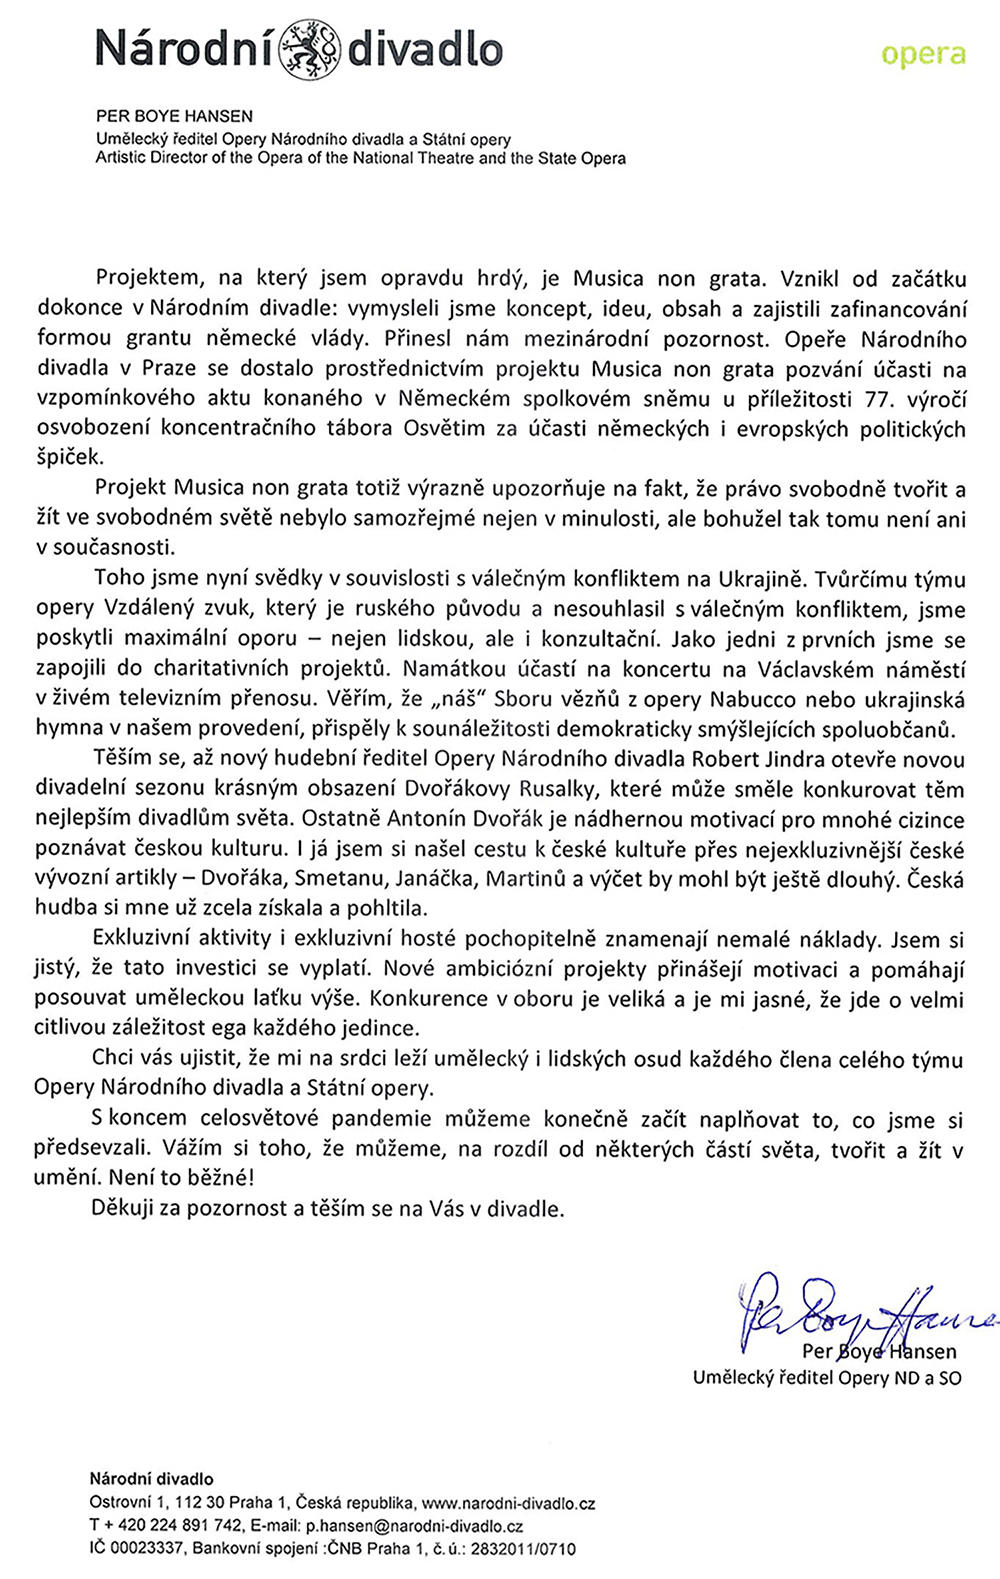 Dopis Pera Boye Hansena z 3. června 2022, strana č. 3 (zdroj Helena Havlíková)